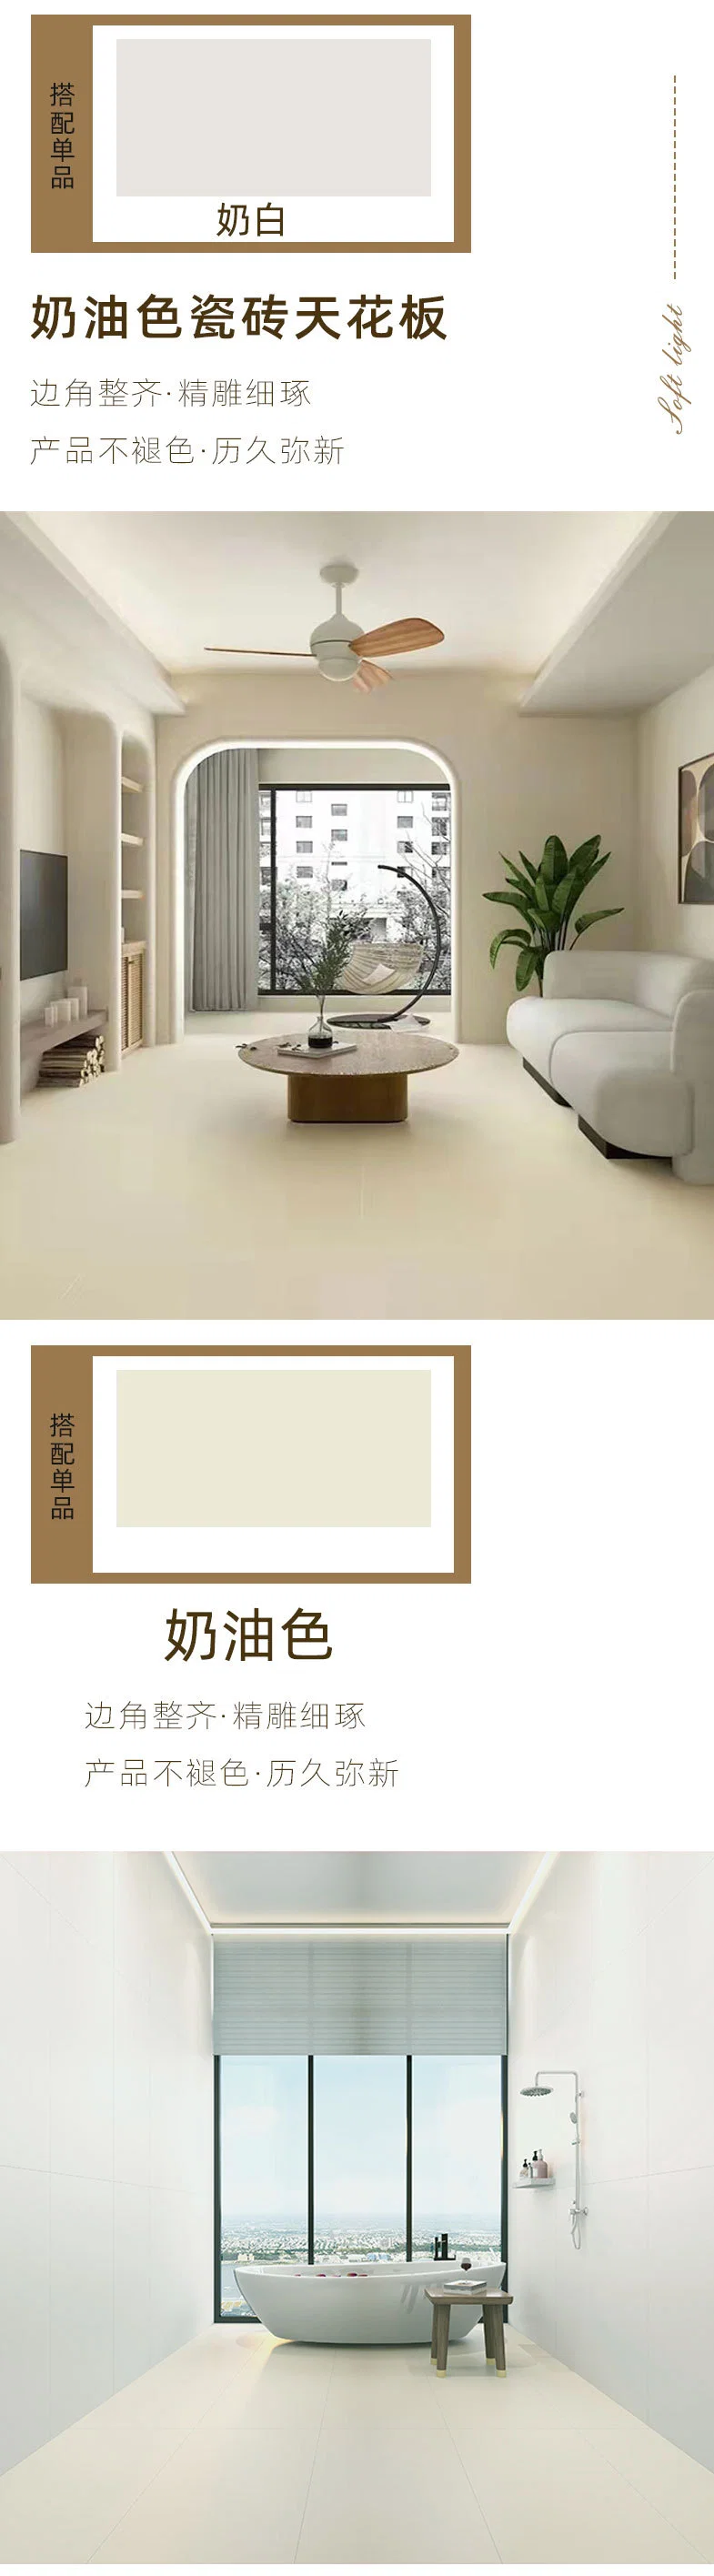 Shaneok Simple Modern Grey Cement Brick 300*600 Bathroom Toilet Tile Archaic Anti-Slip Wear-Resisting Toilet Floor Tile